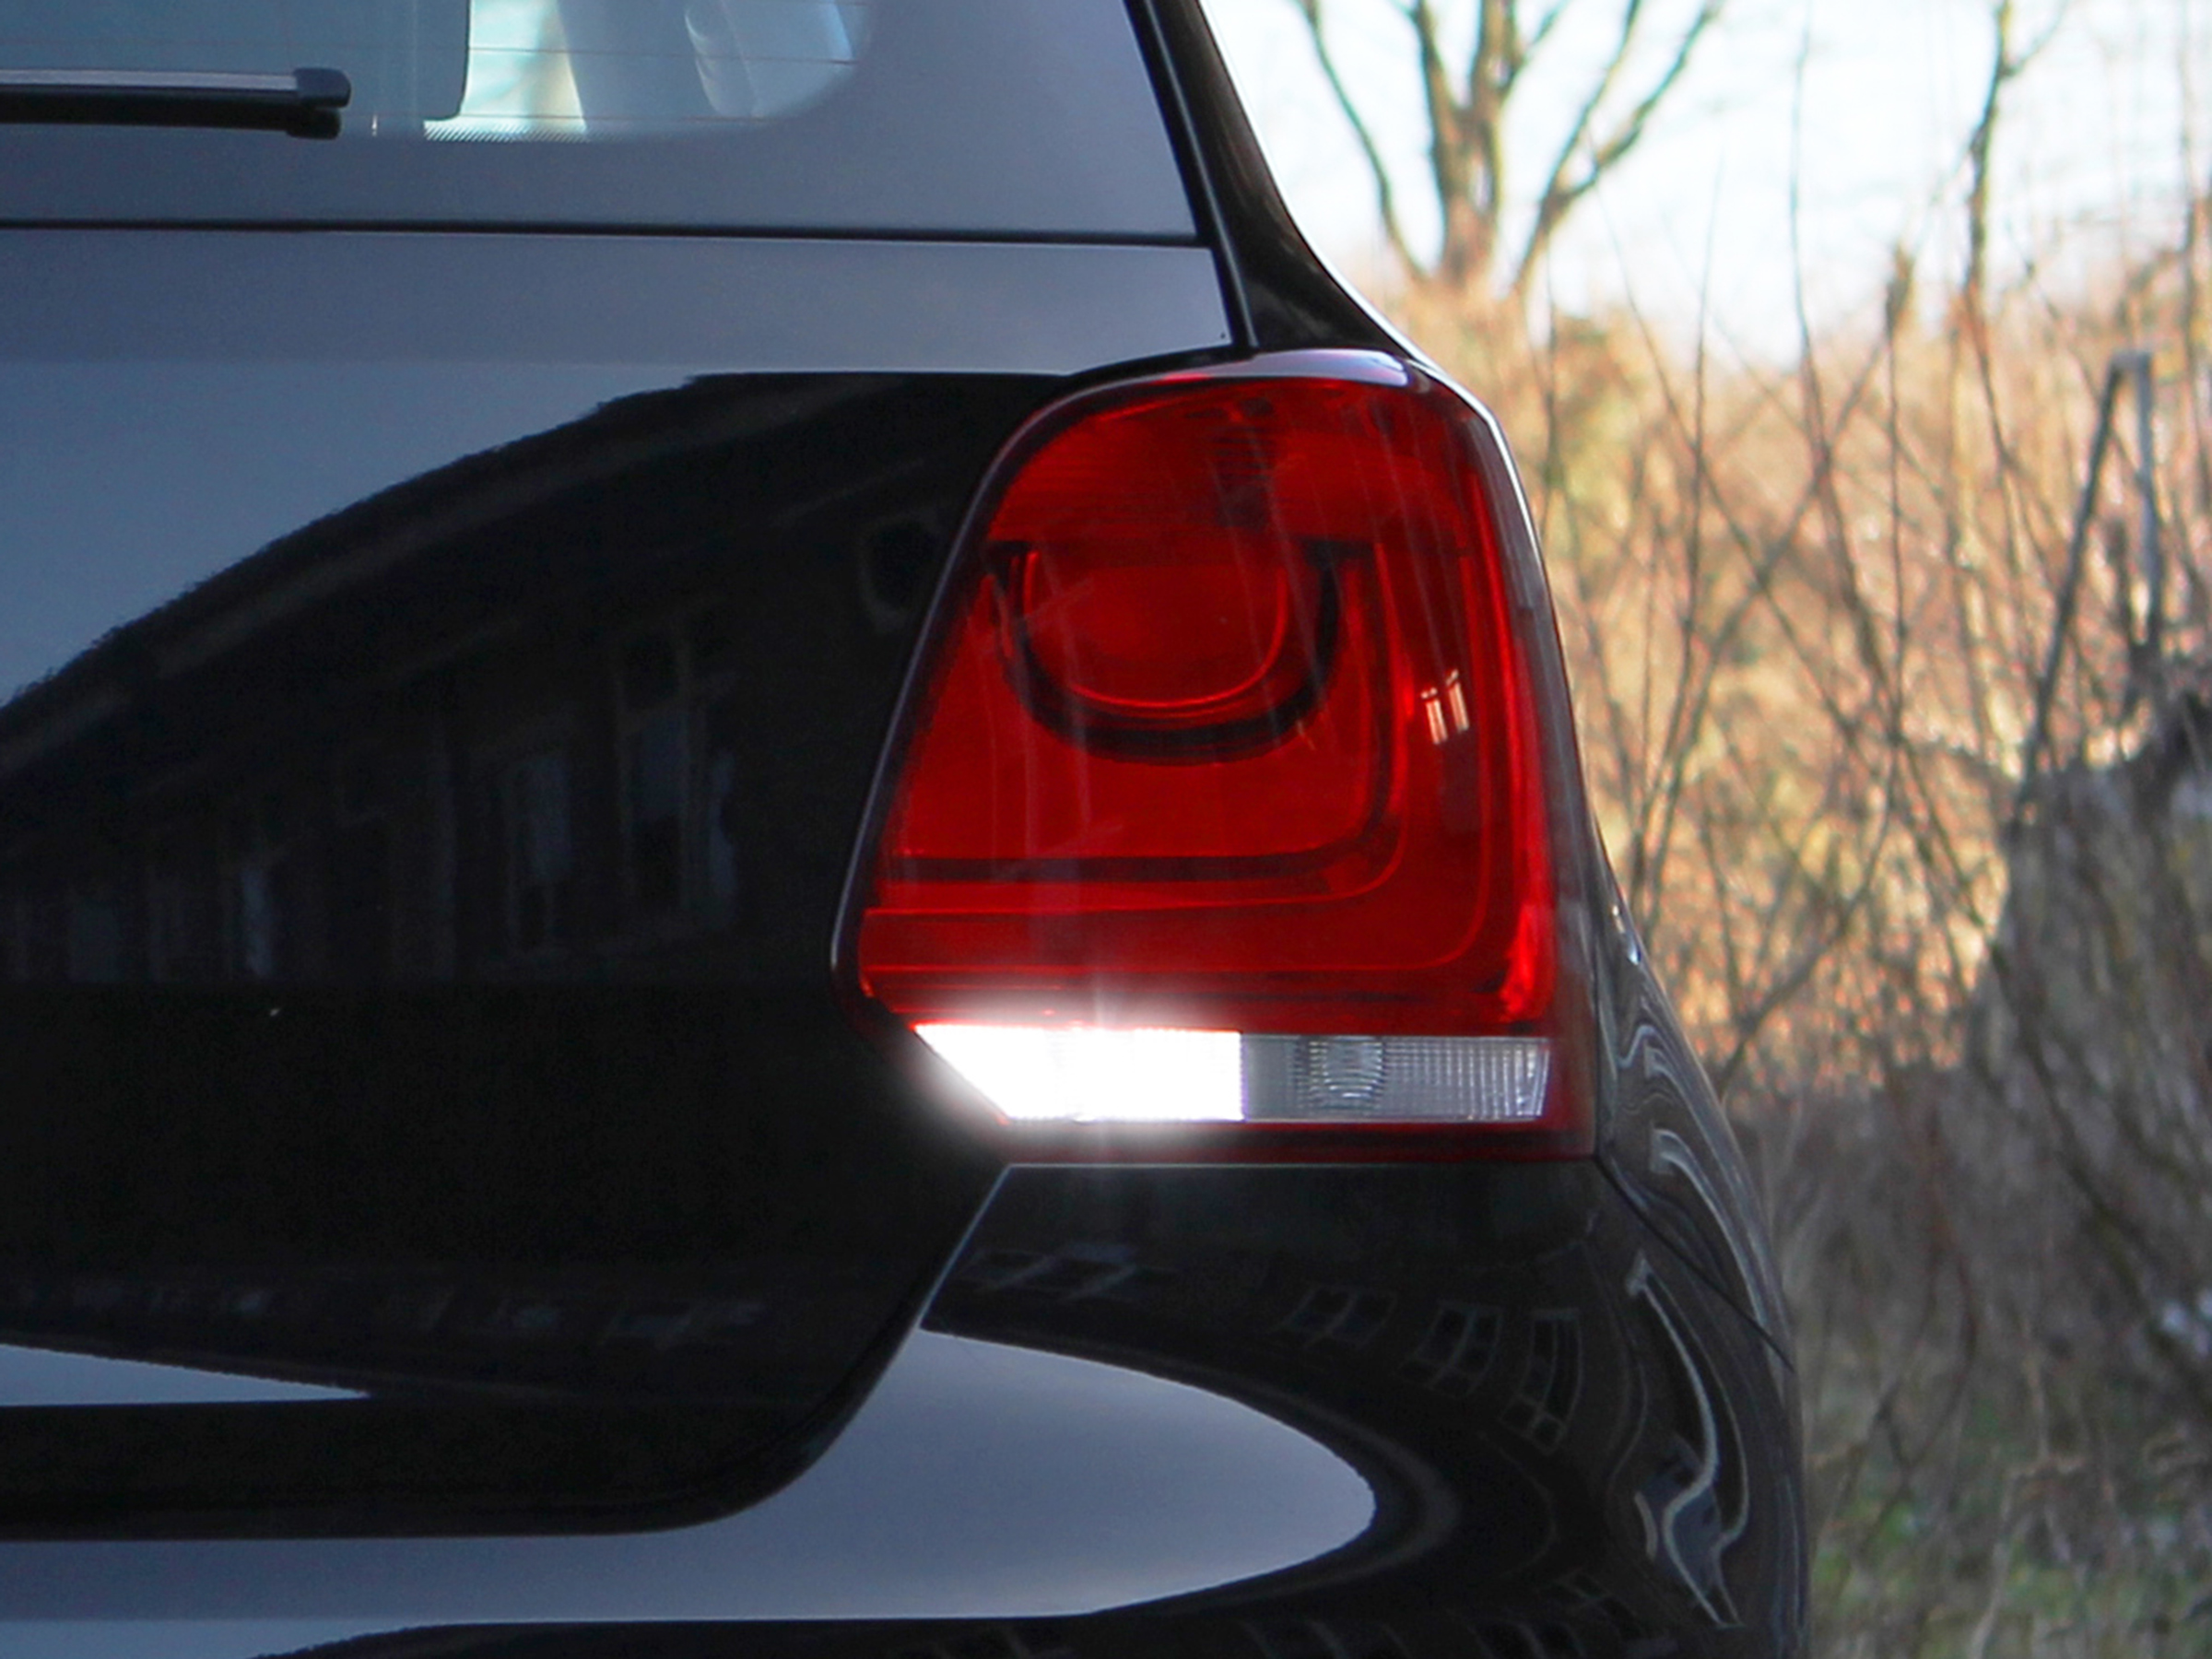 6x5 W CREE® LED Rückfahrlicht VW Polo 6r, weiss